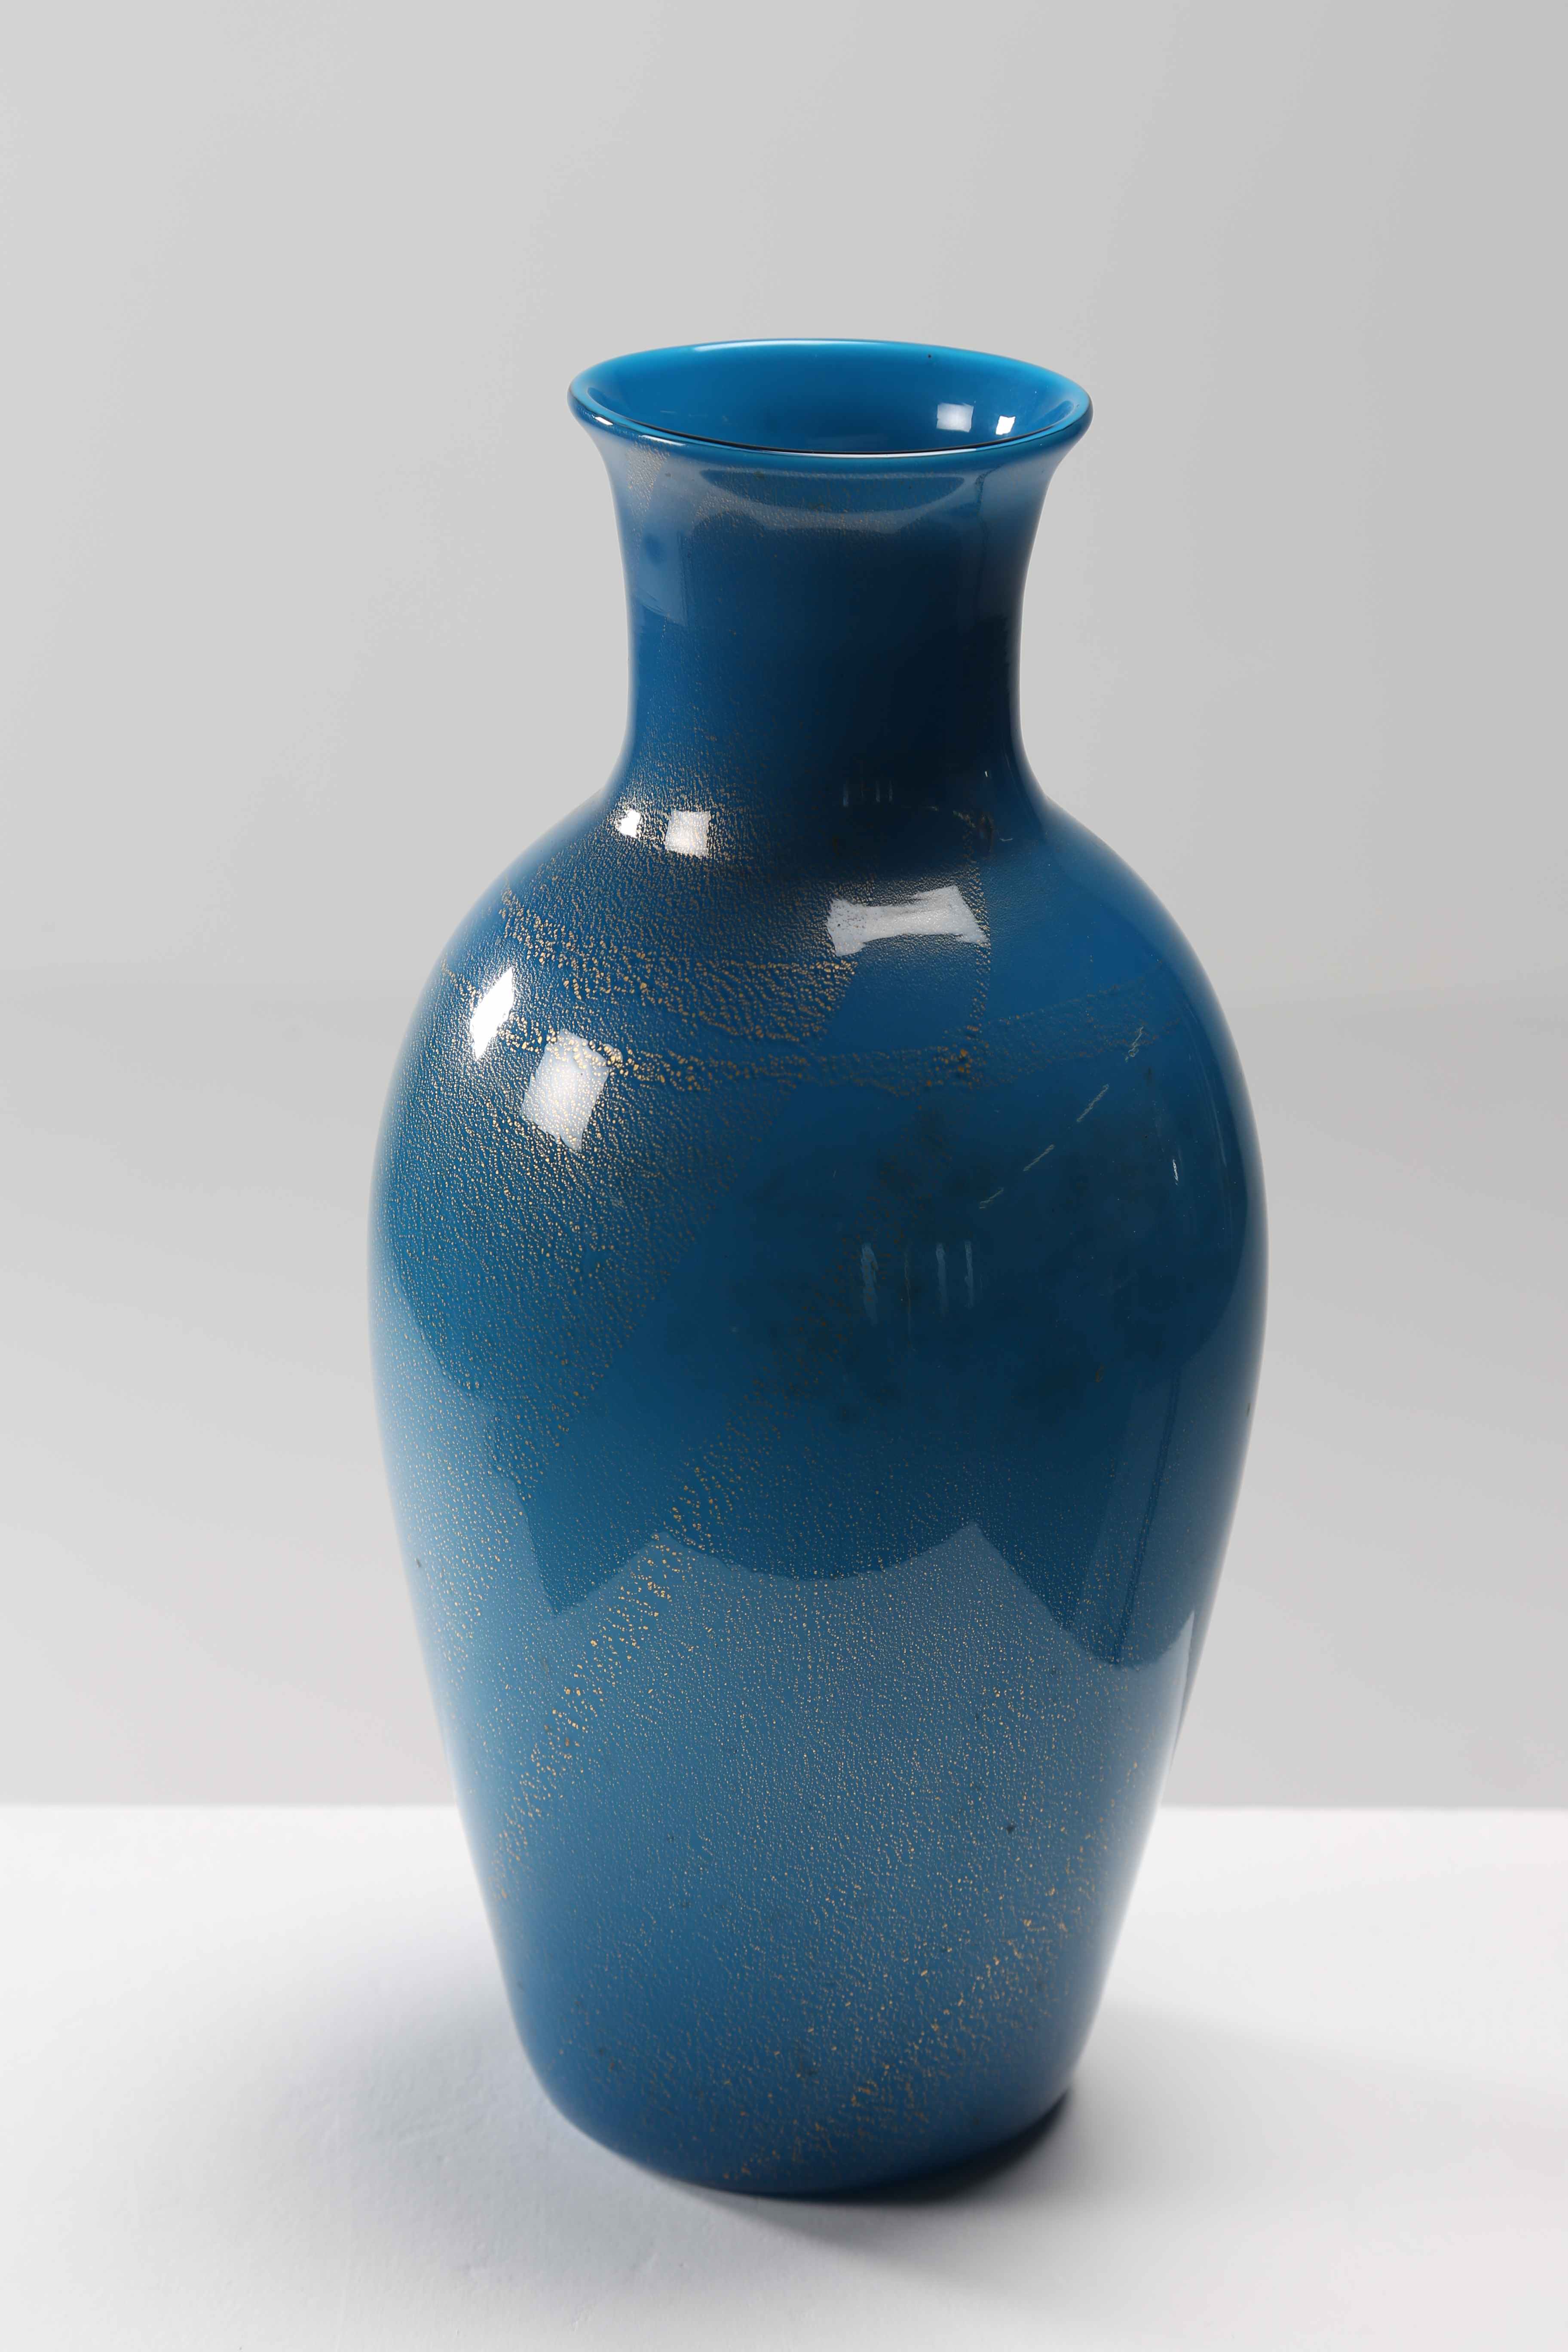 BUZZI TOMASO (1900 - 1981)
For Venini. Vase.
Glass cased in blue. 

16,00 x 33,00 x 16,00 cm